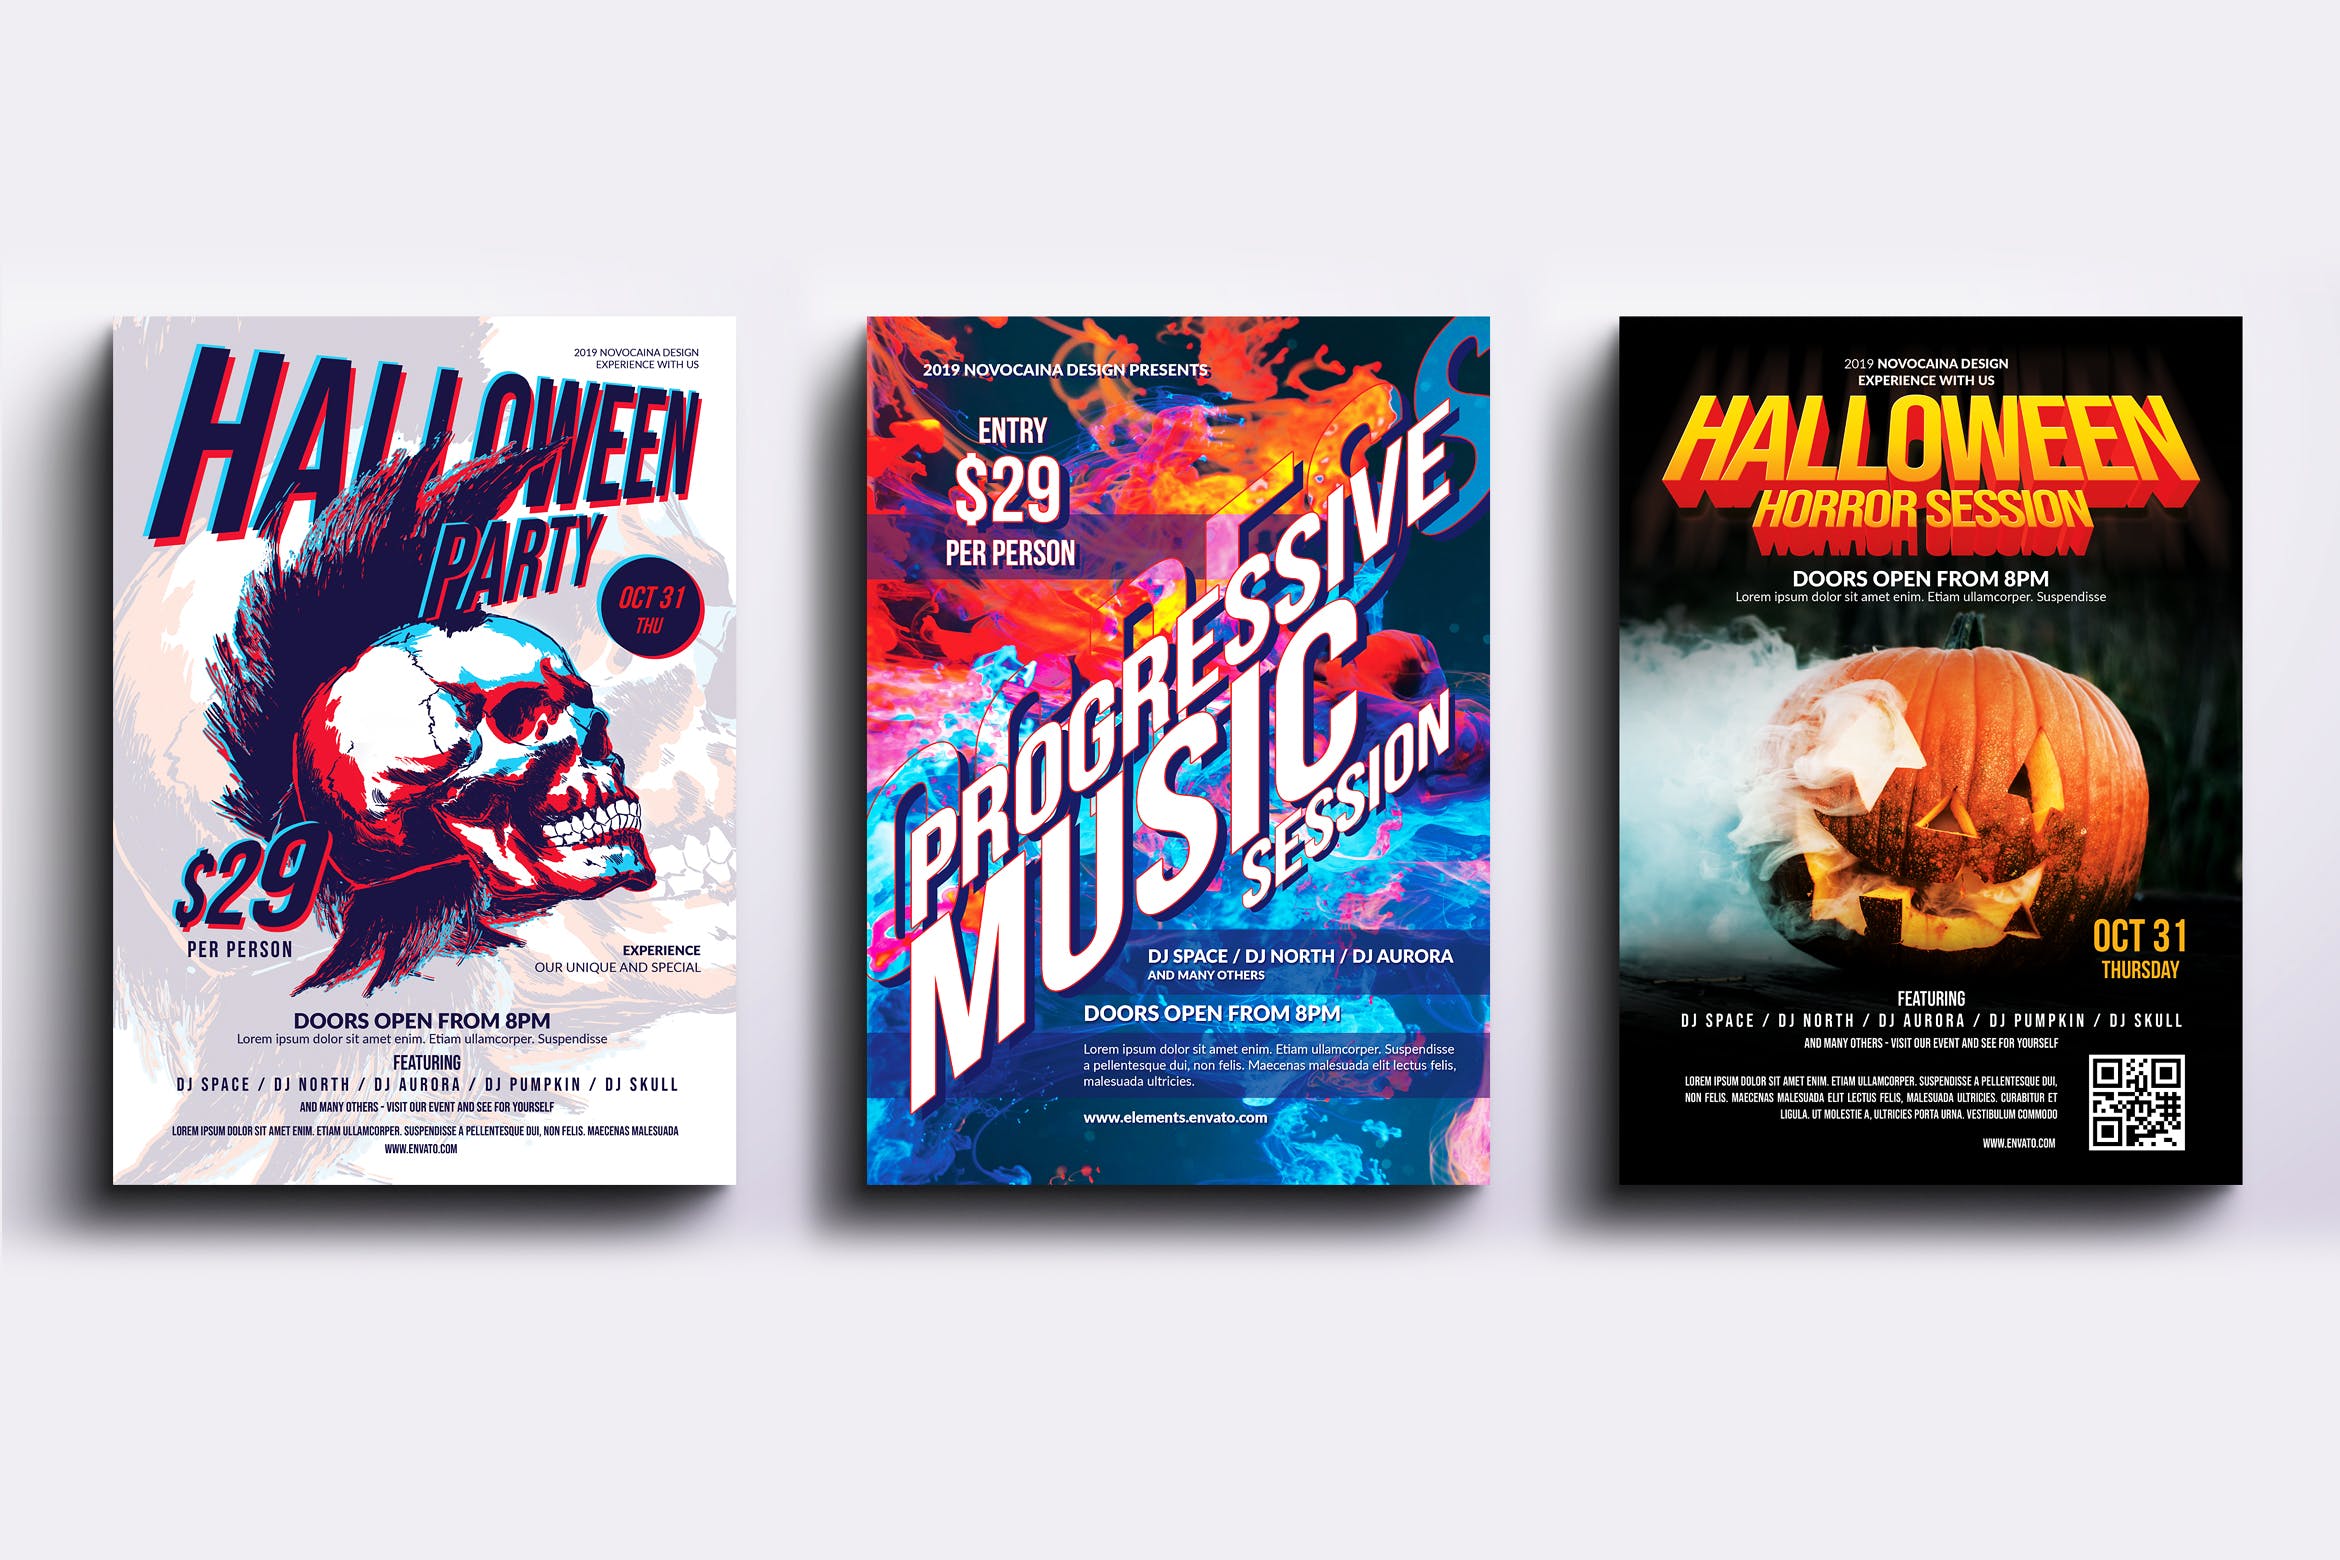 迪斯科音乐舞厅主题活动派对海报PSD素材第一素材精选模板合集v4 Event Party Posters & Flyers Bundle V4插图